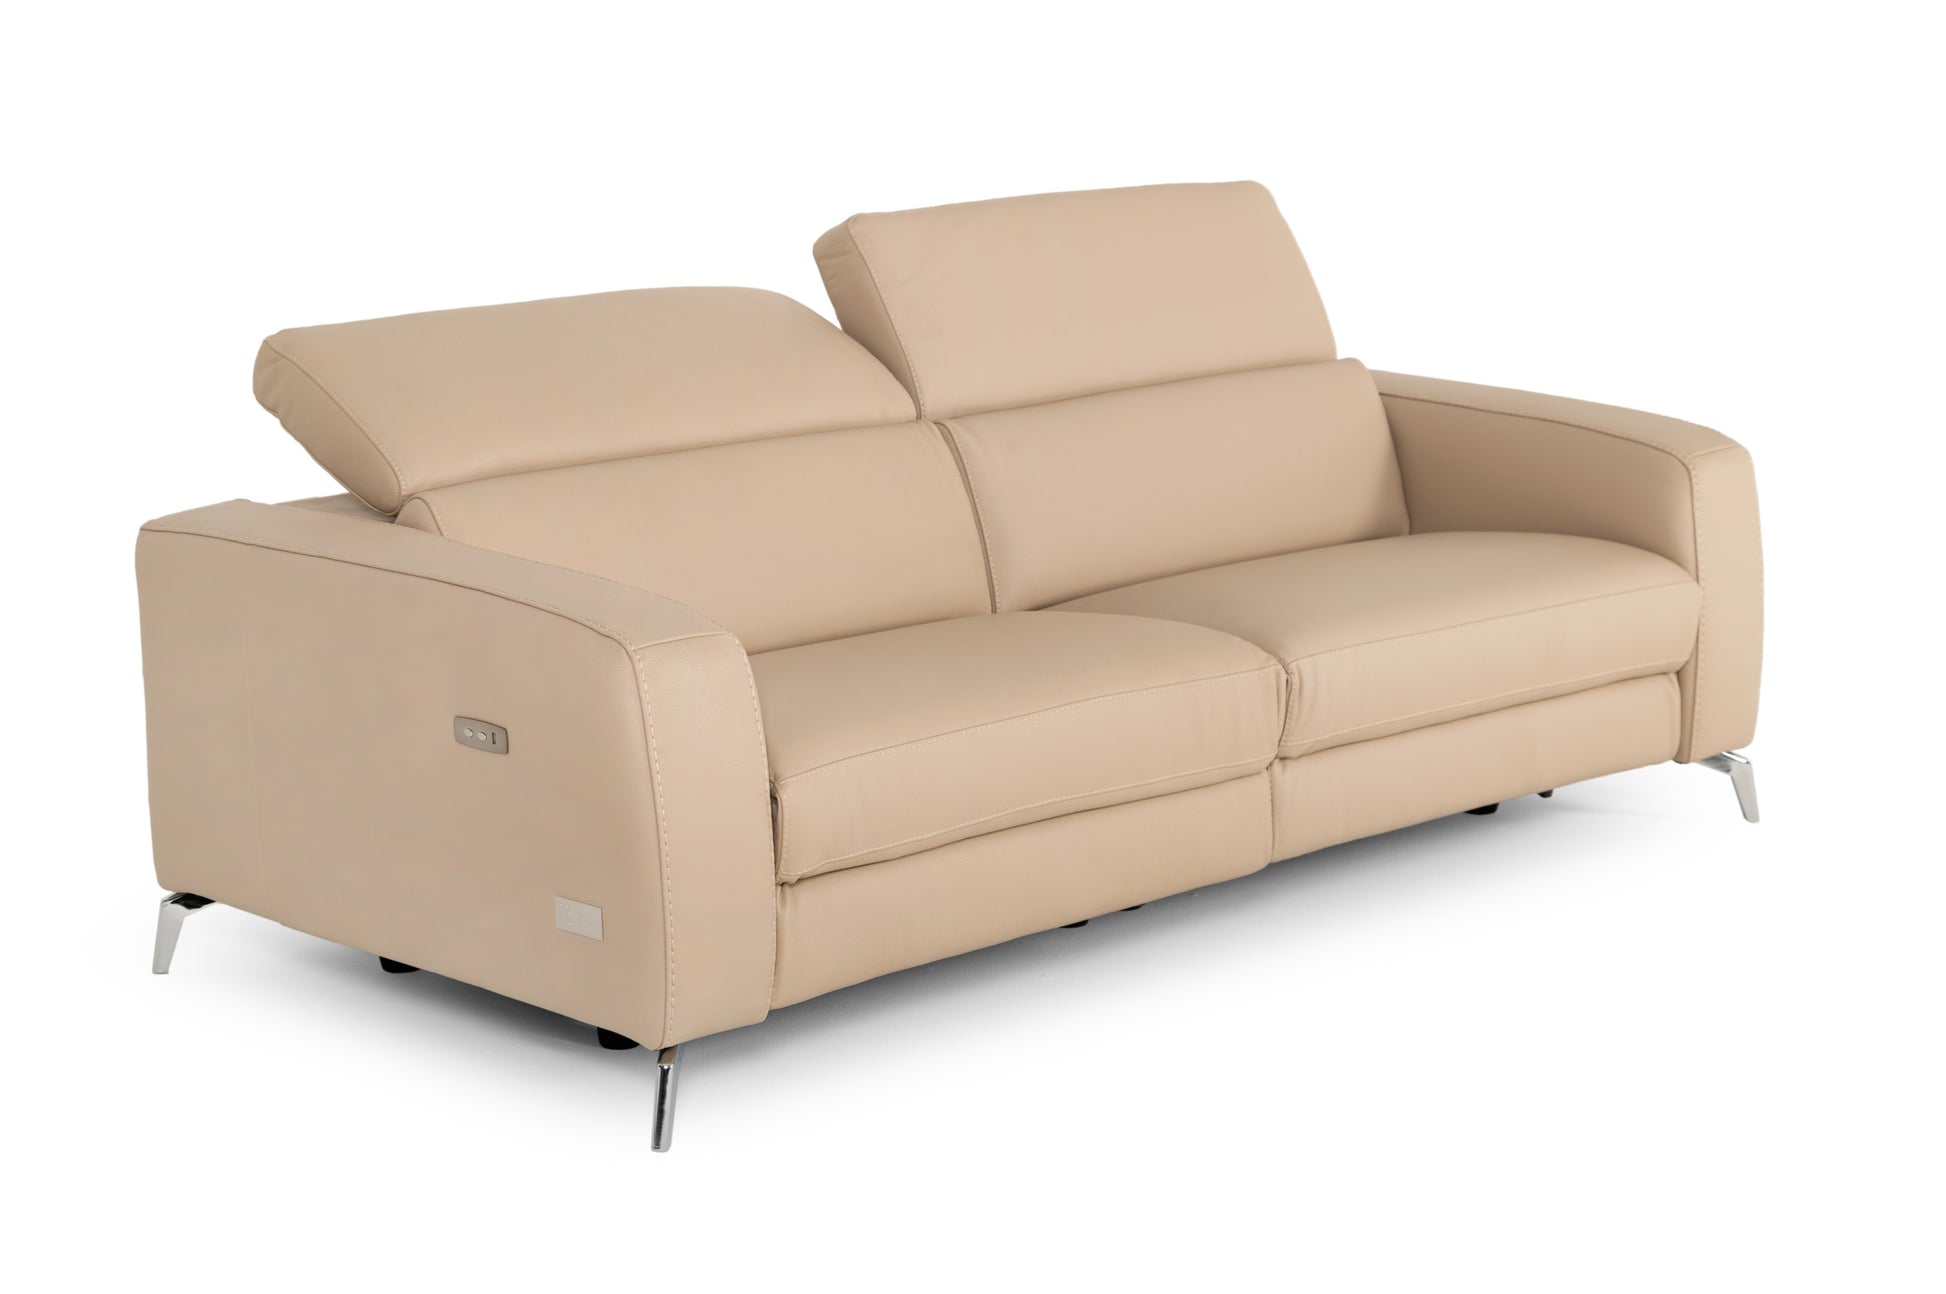 VIG Furniture Coronelli Turin Cappuccino Leather 2 Seater 91" Recliner Sofa